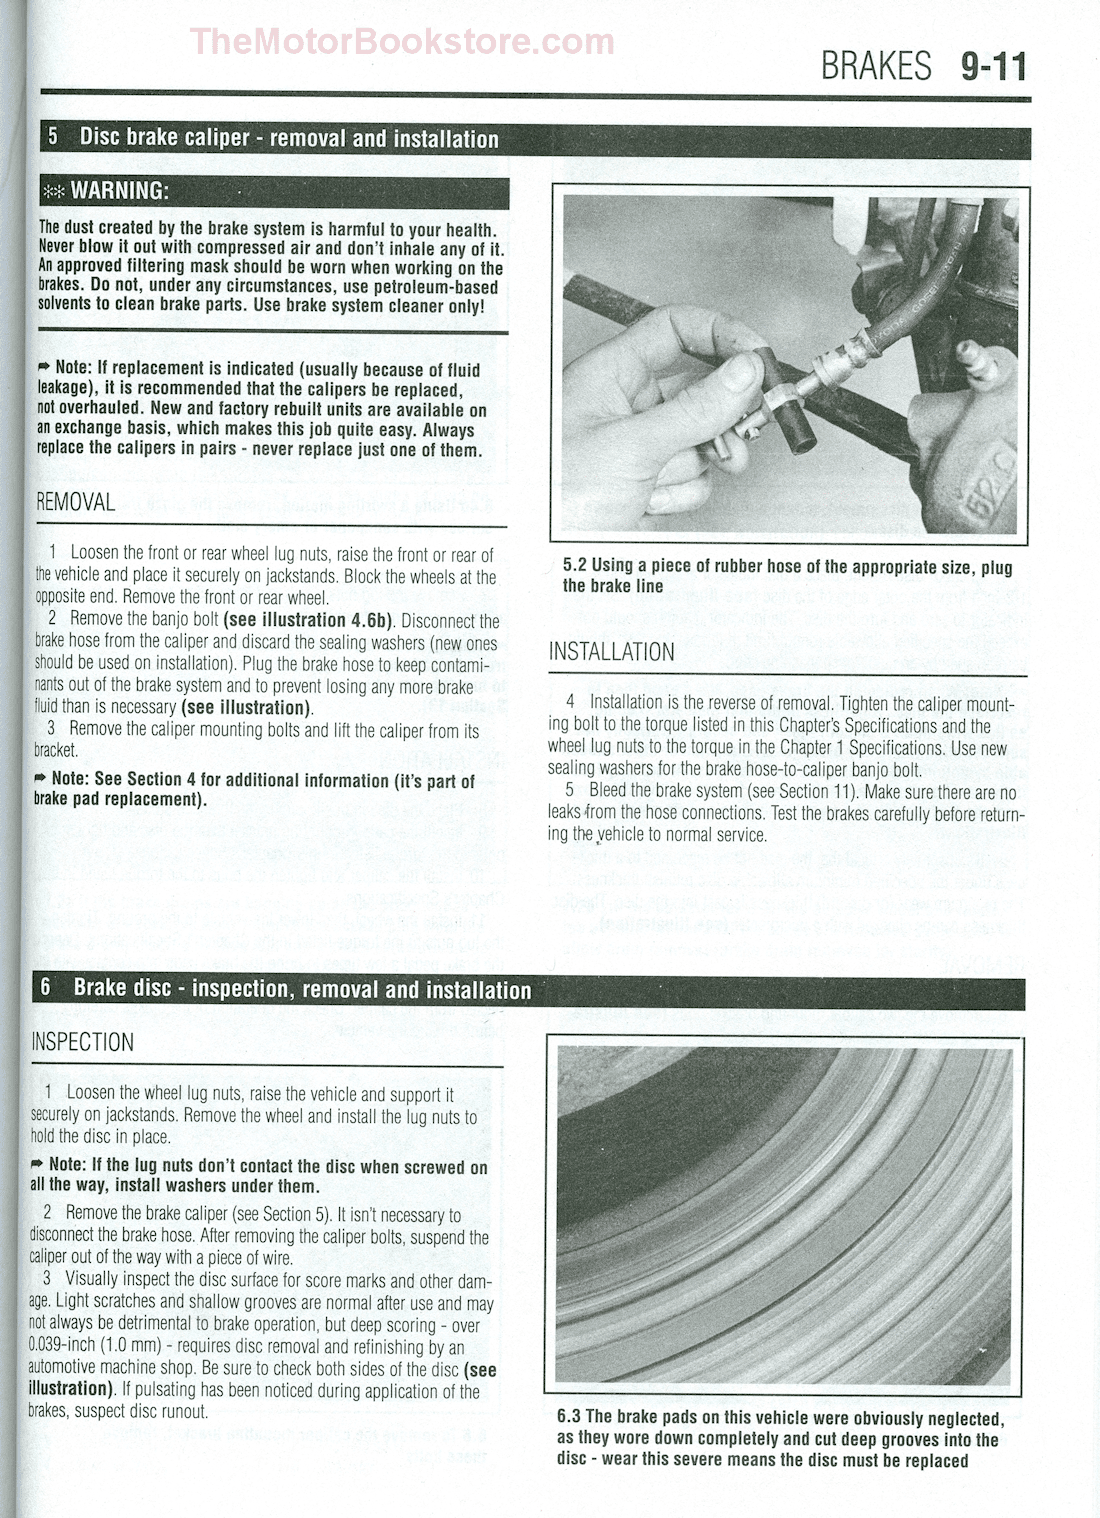 2007 Nissan sentra repair manual